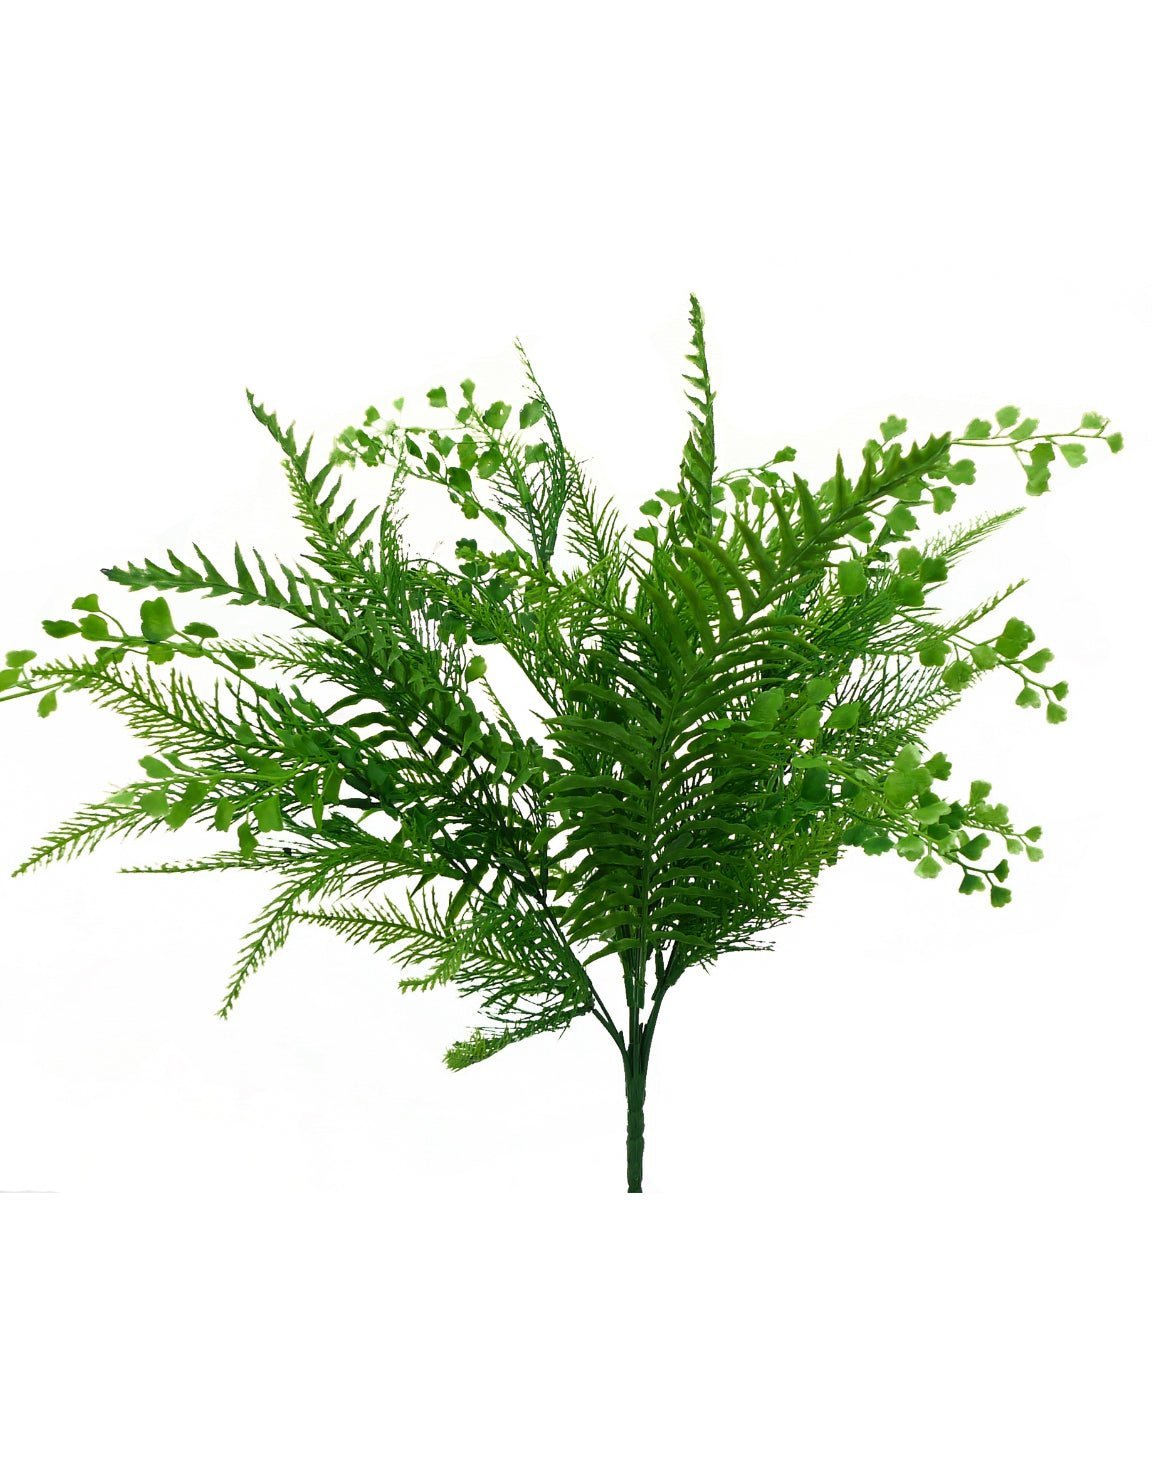 Mixed greenery - mixed ferns bush - Greenery Marketgreenery13485gn